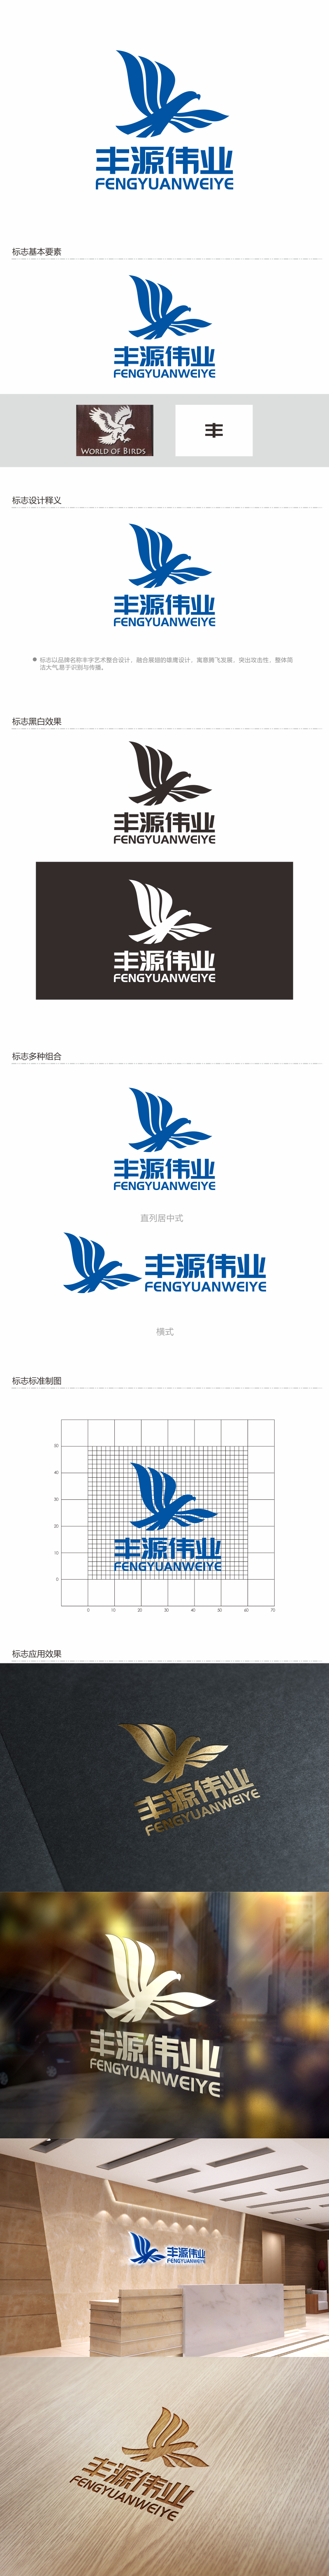 何嘉健的北京丰源伟业建筑装饰工程有限公司logo设计